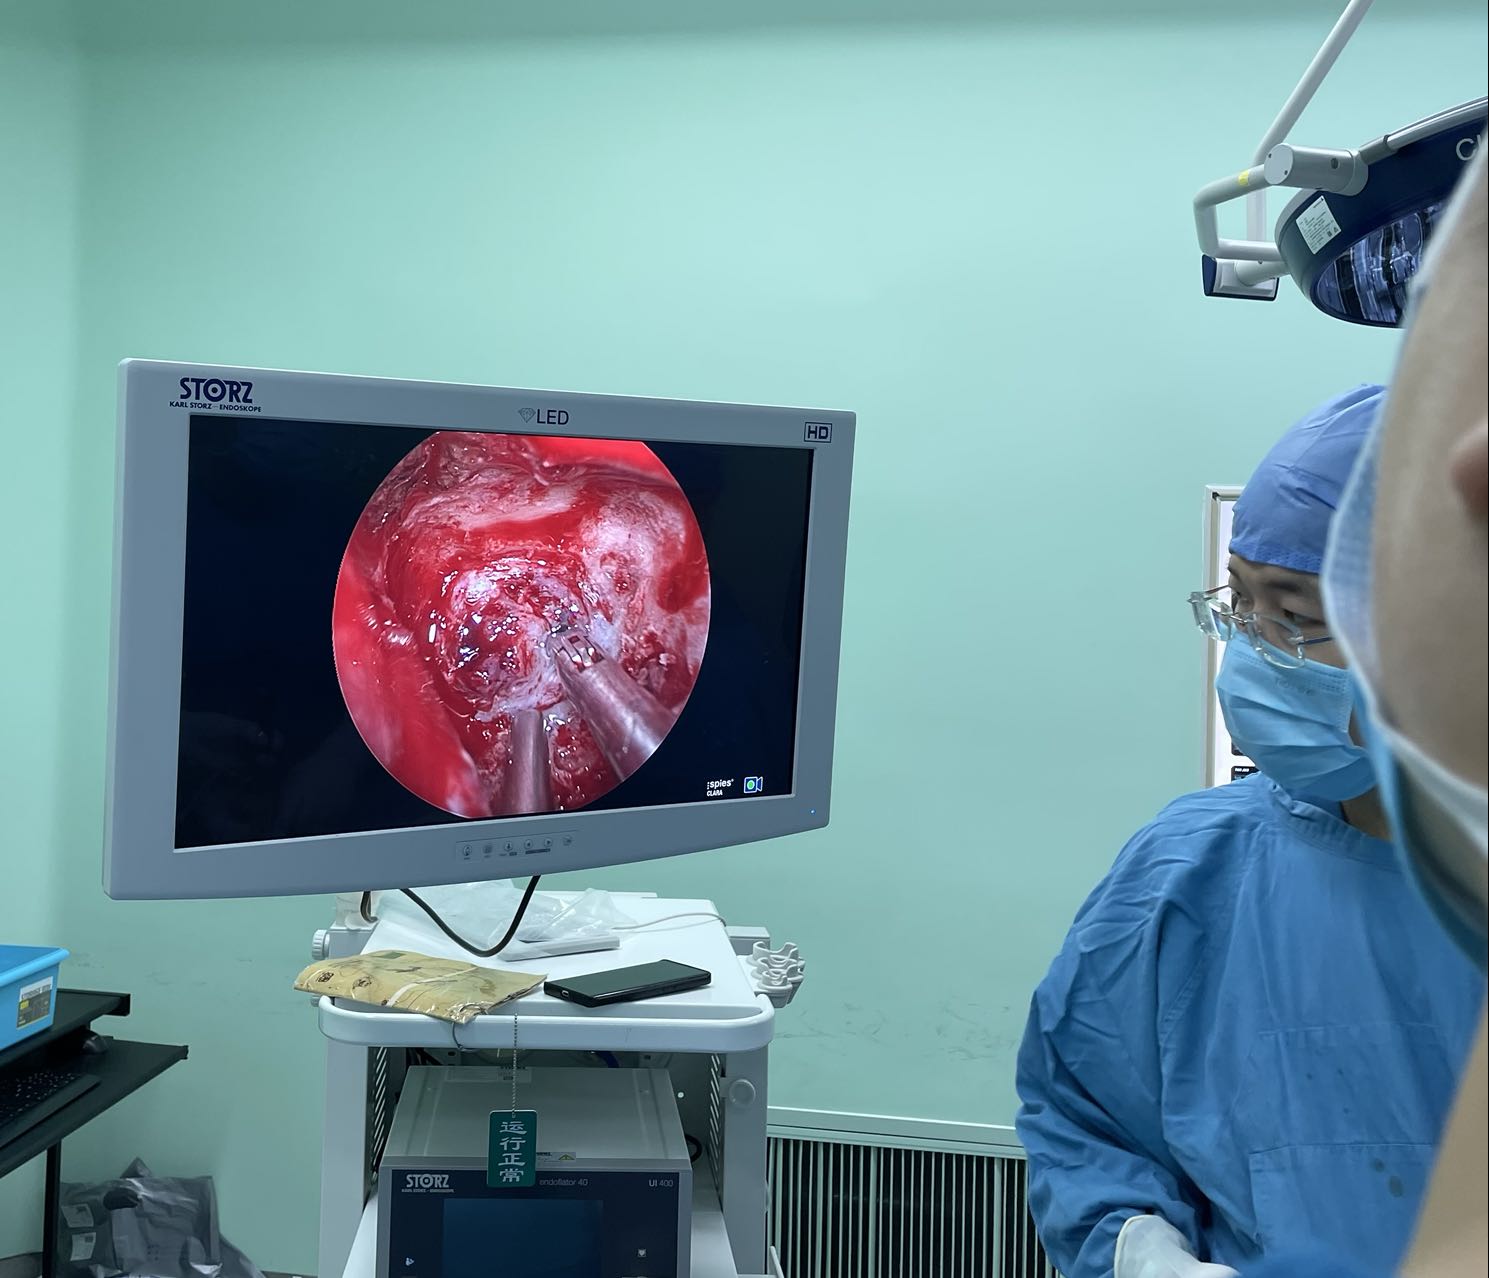 原州区人民医院神经脊柱外科成功应用双镜技术开展高血压性脑出血手术治疗 - 固原新闻网_固原市主流新闻媒体门户